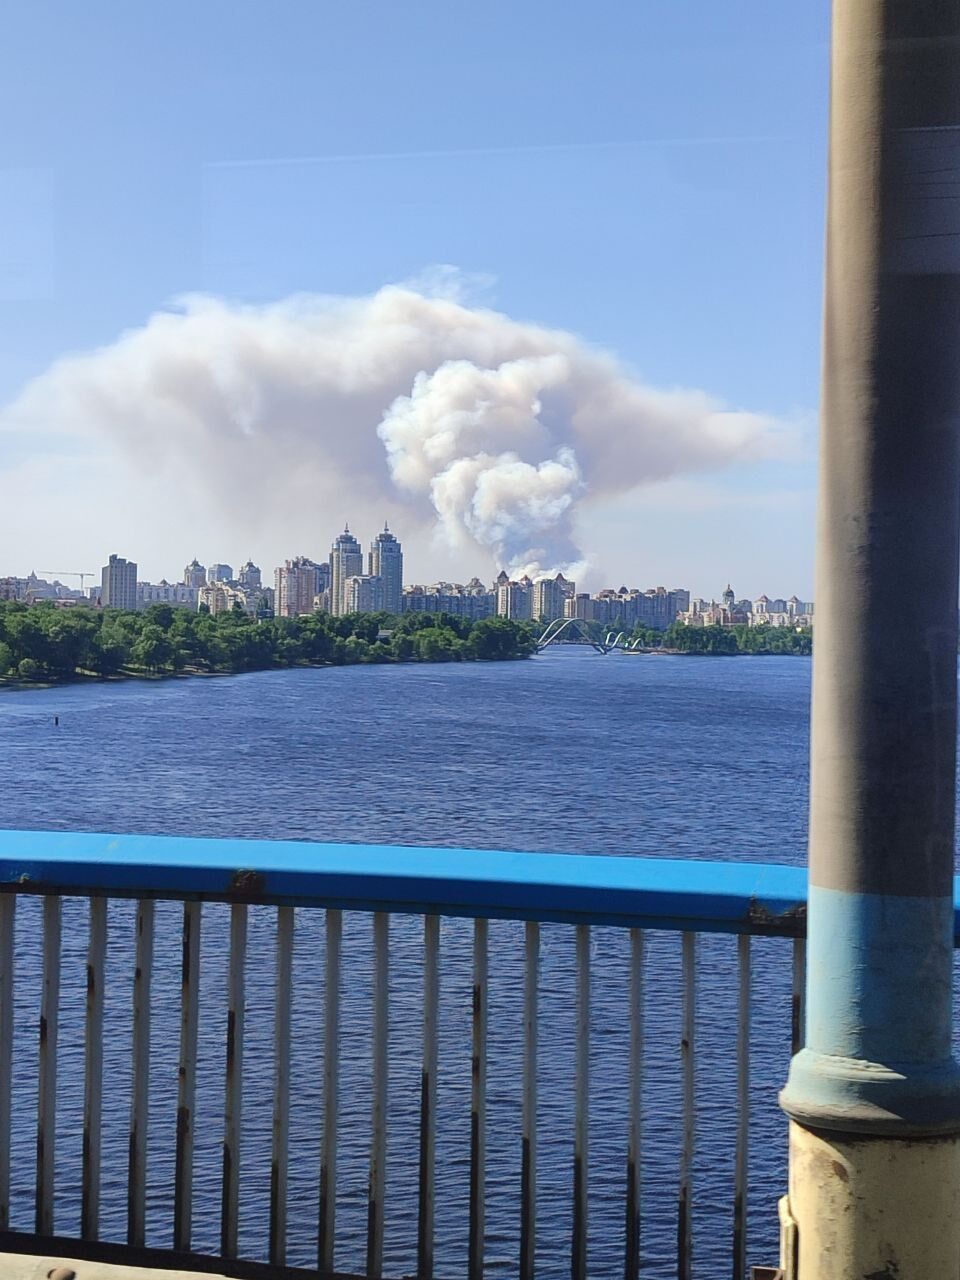 Над лесом поднялся большой столб дыма: под Киевом возник сильный пожар. Фото и видео